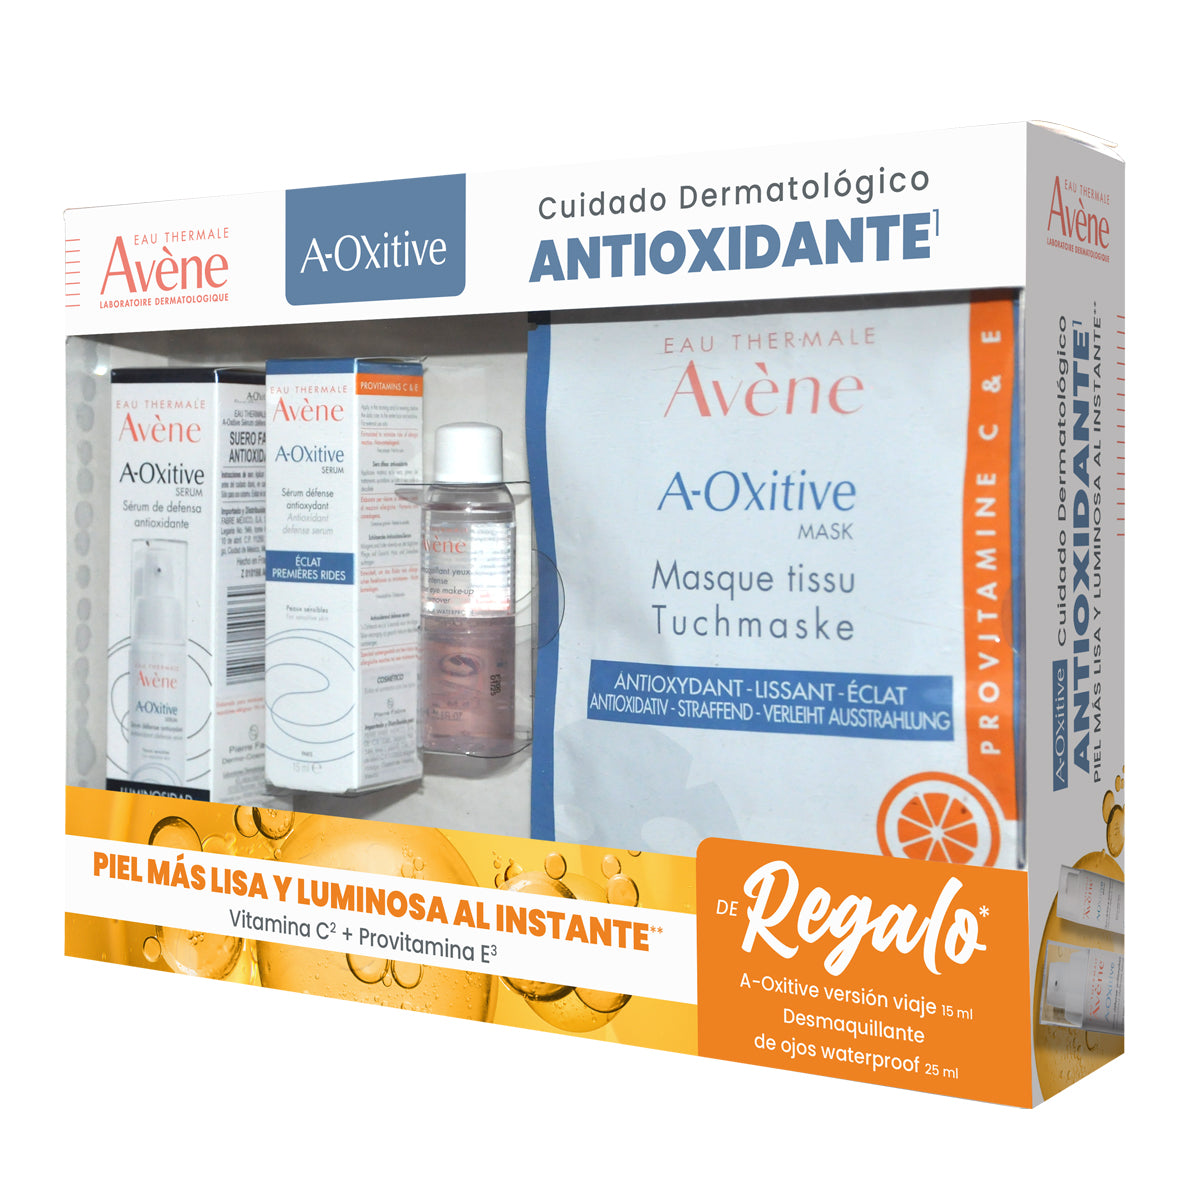 Avene Kit A-Oxitive serum 30ml + A-Oxitive serum 15ml + Desmaquillante bifasico 25ml.